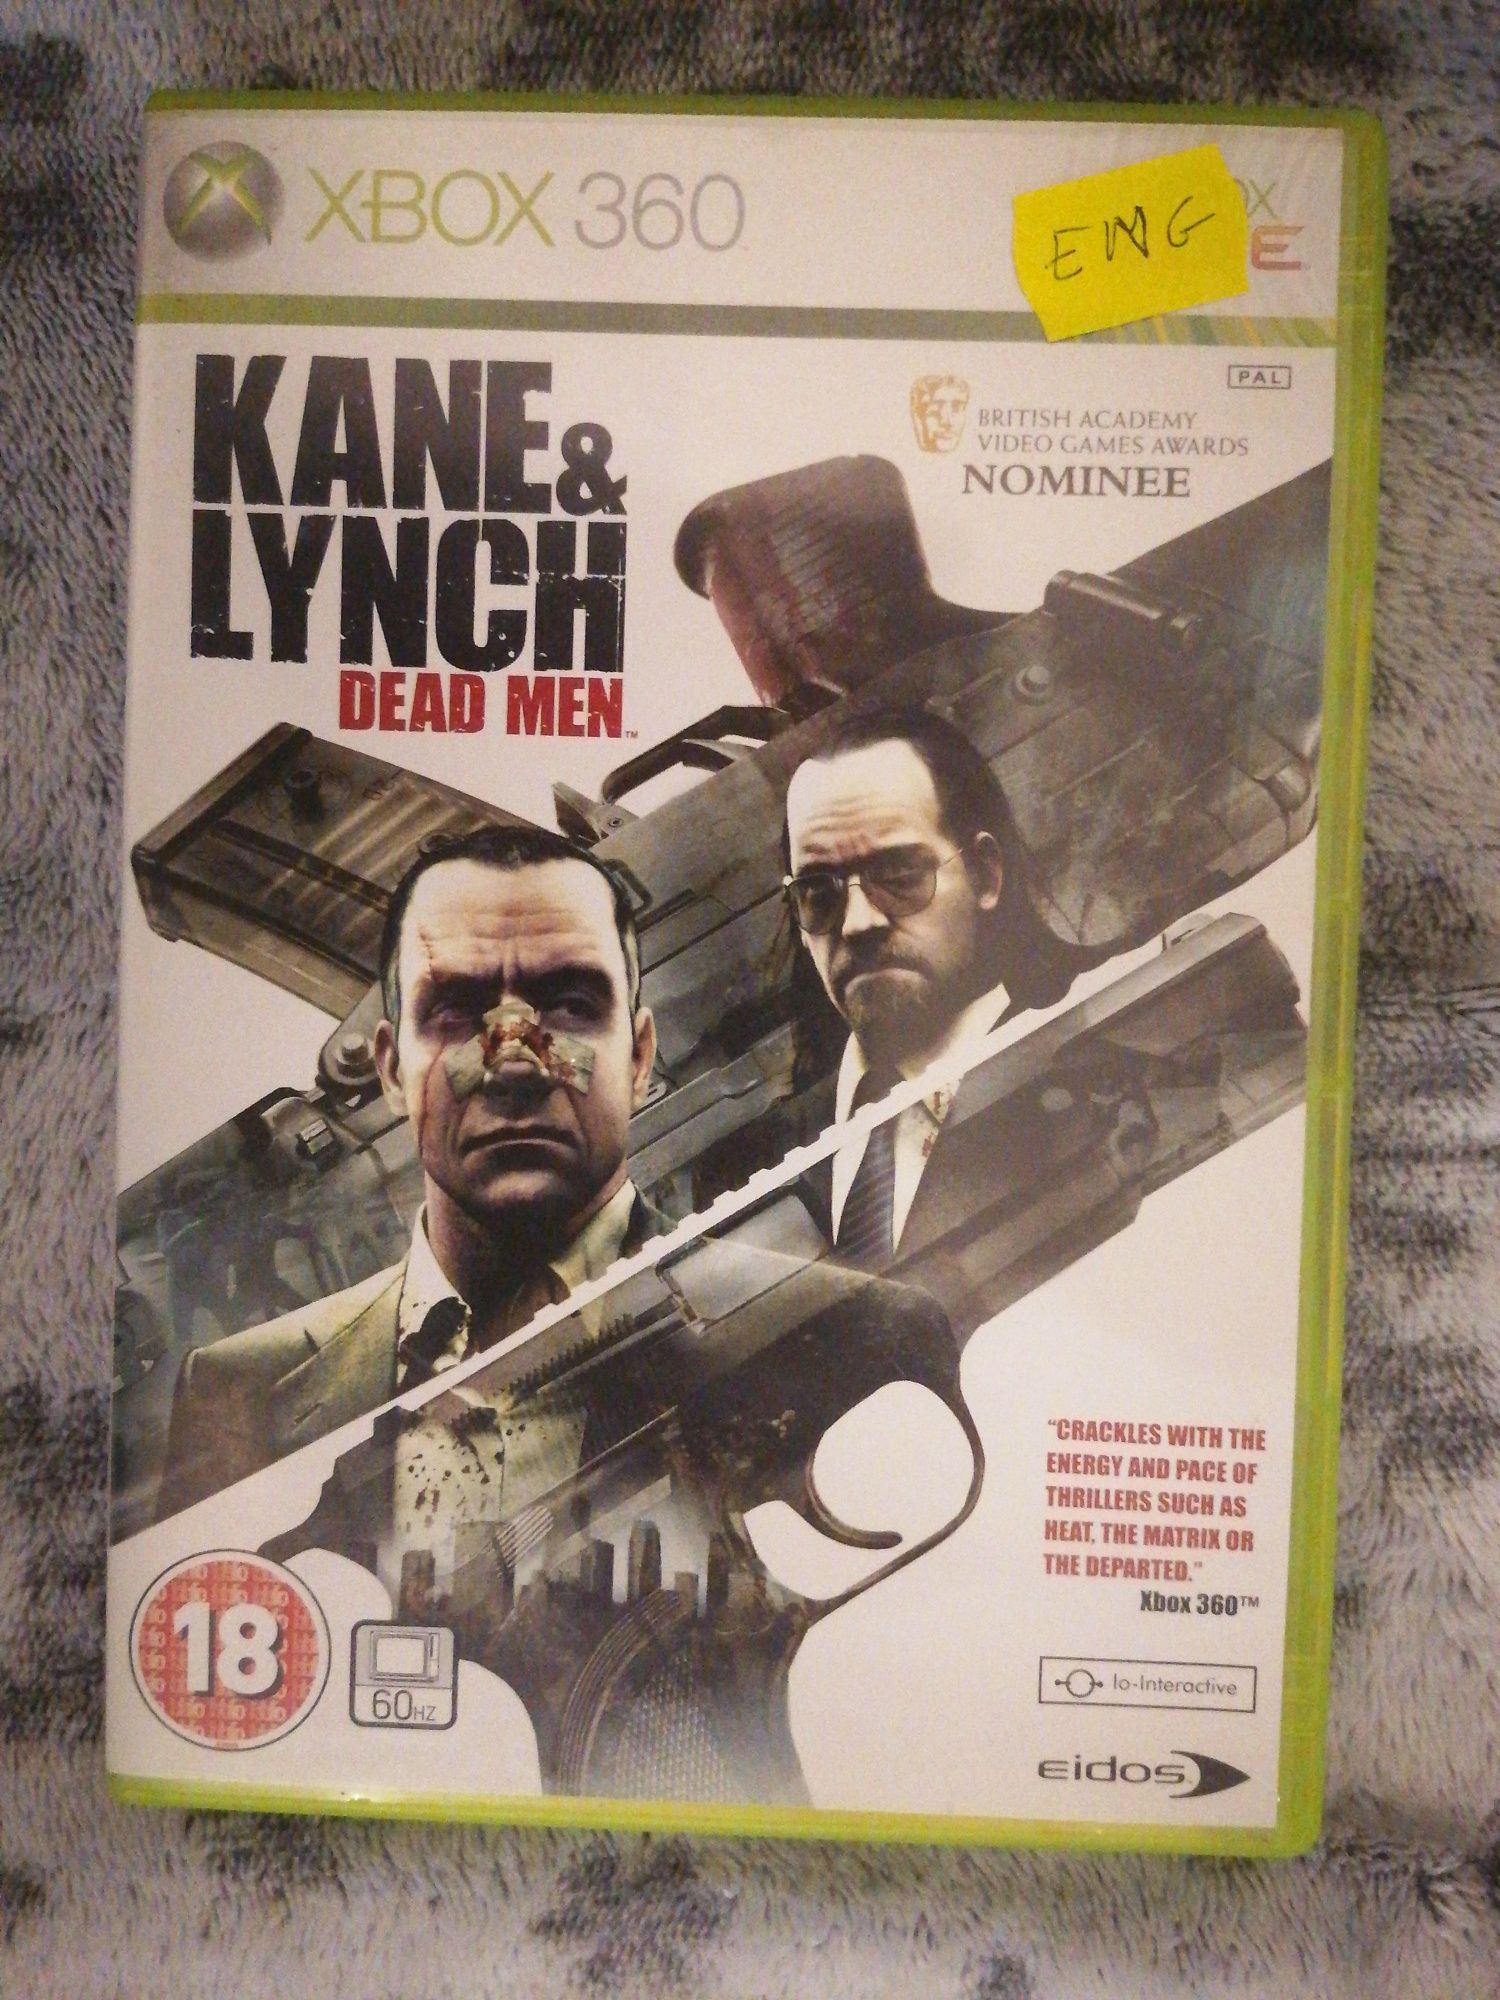 Kane & Lynch dead men xbox 360